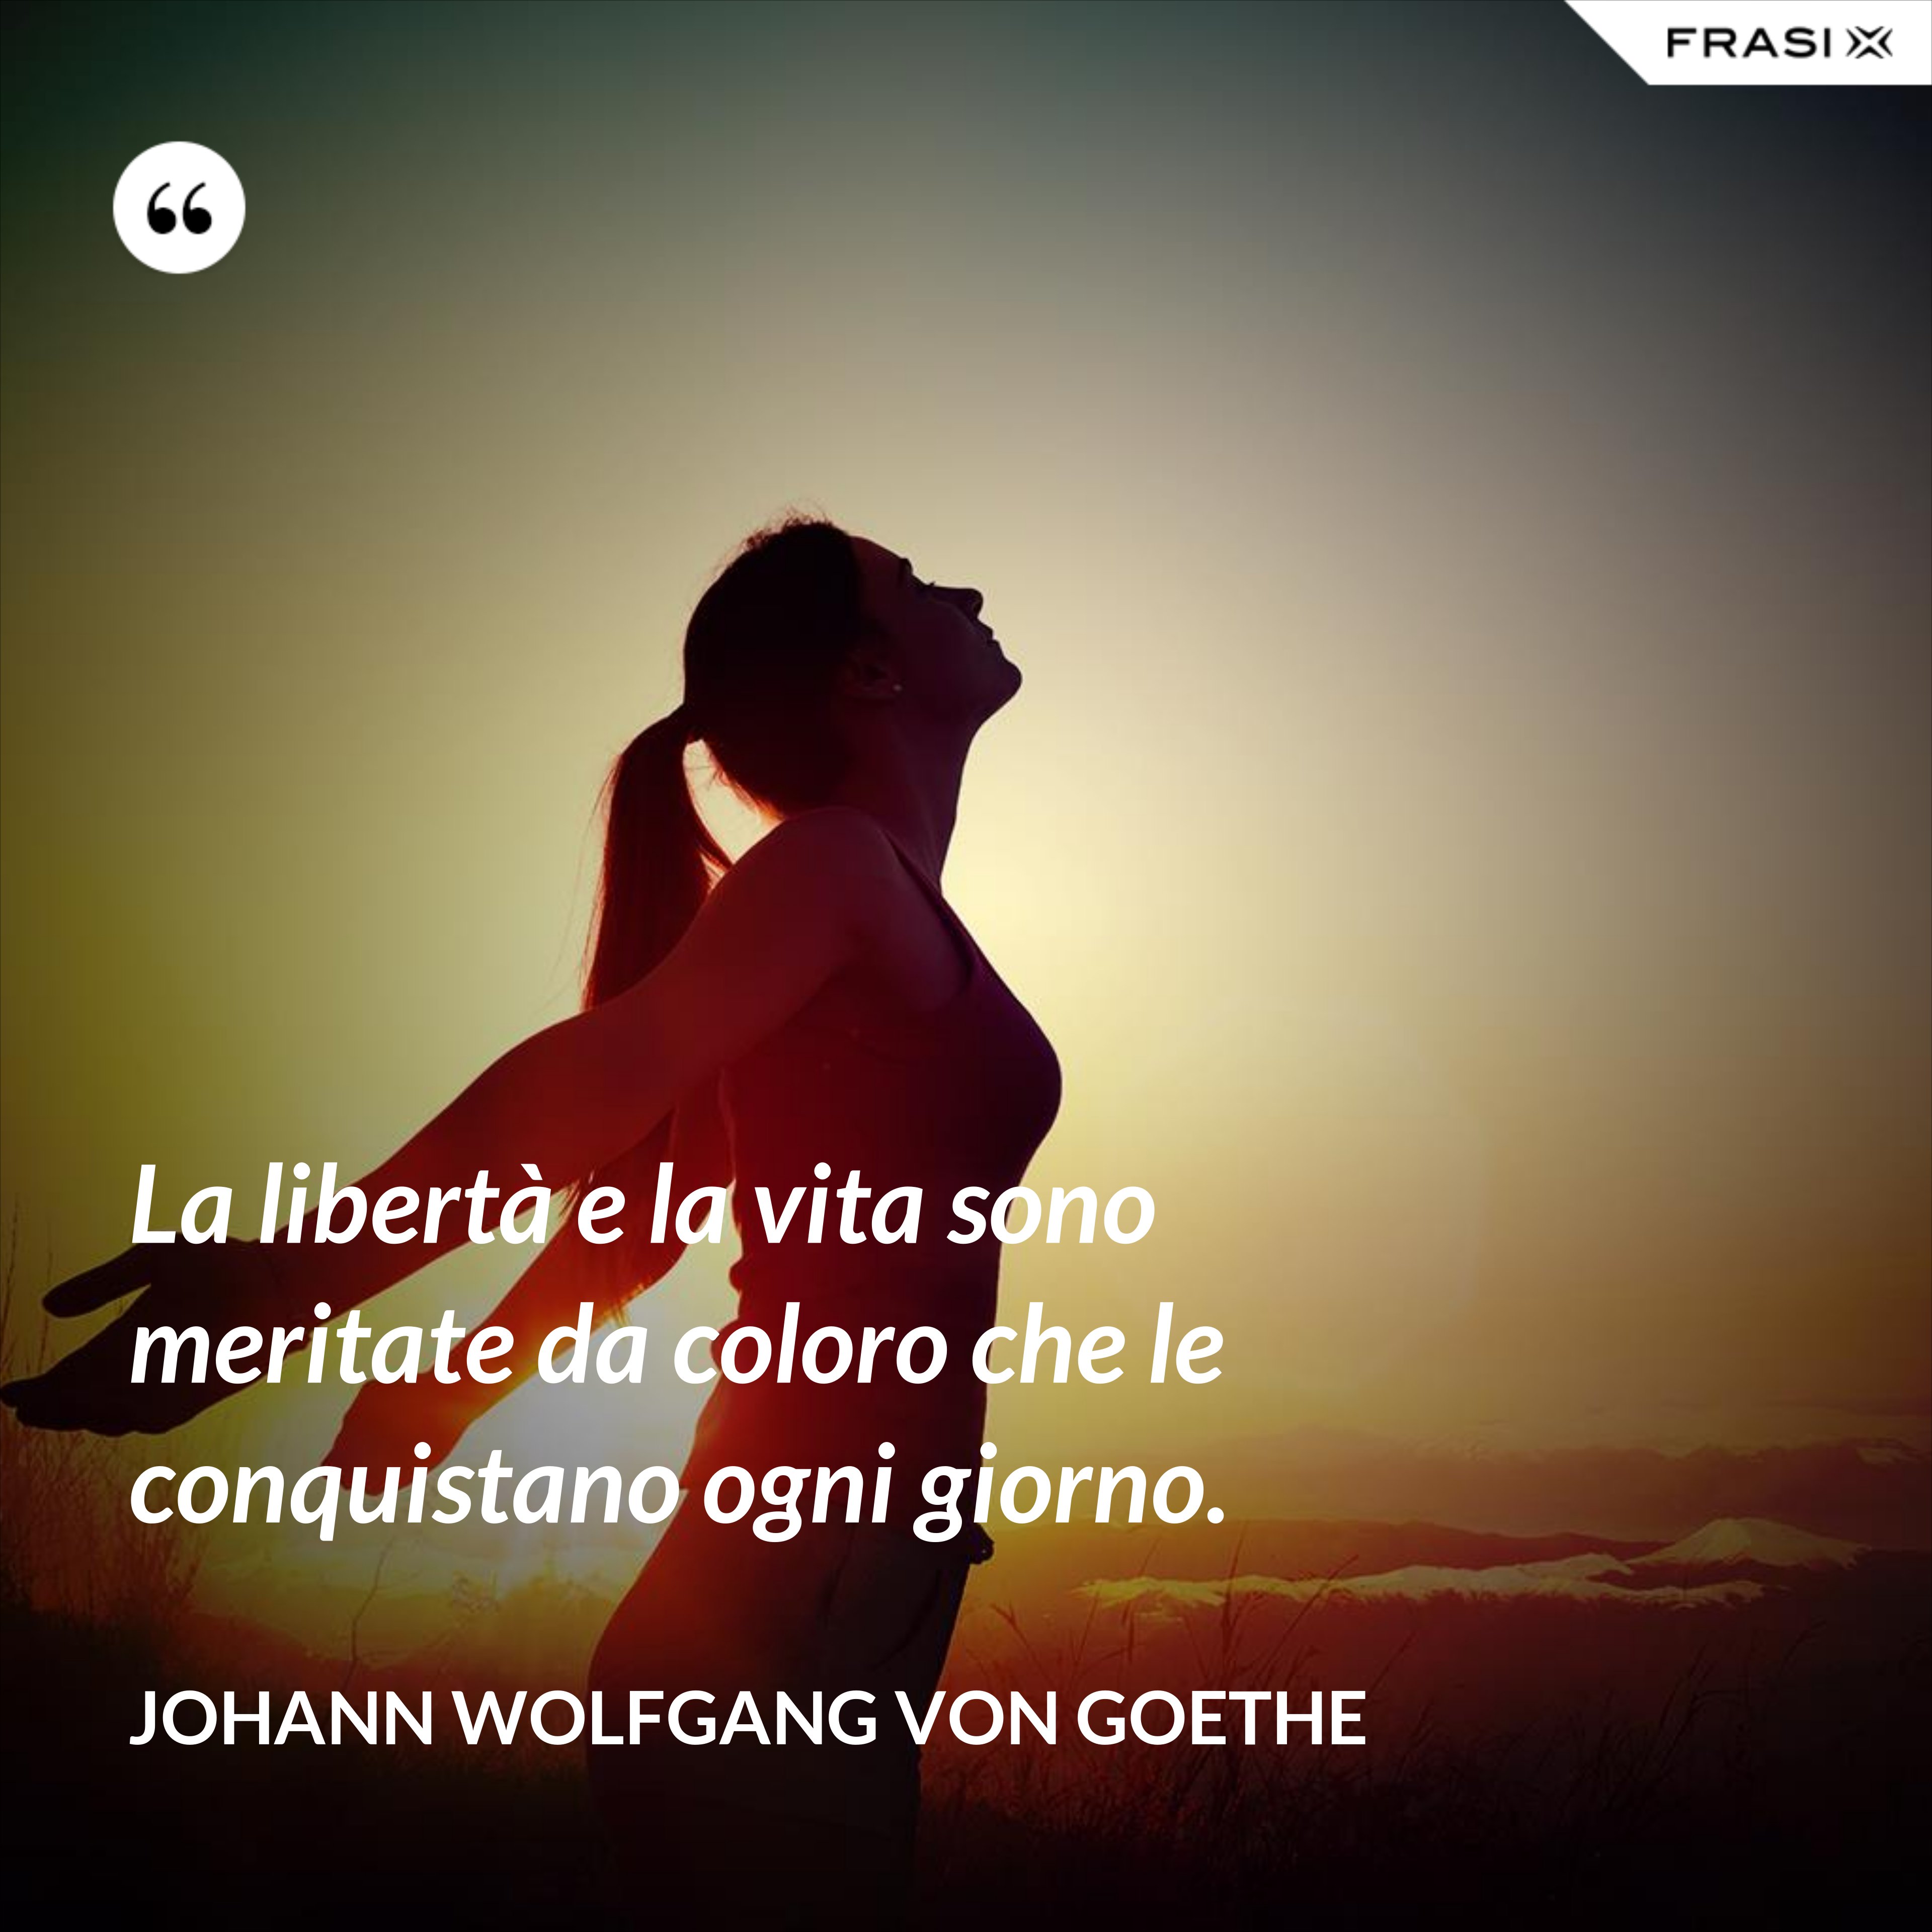 La libertà e la vita sono meritate da coloro che le conquistano ogni giorno. - Johann Wolfgang von Goethe